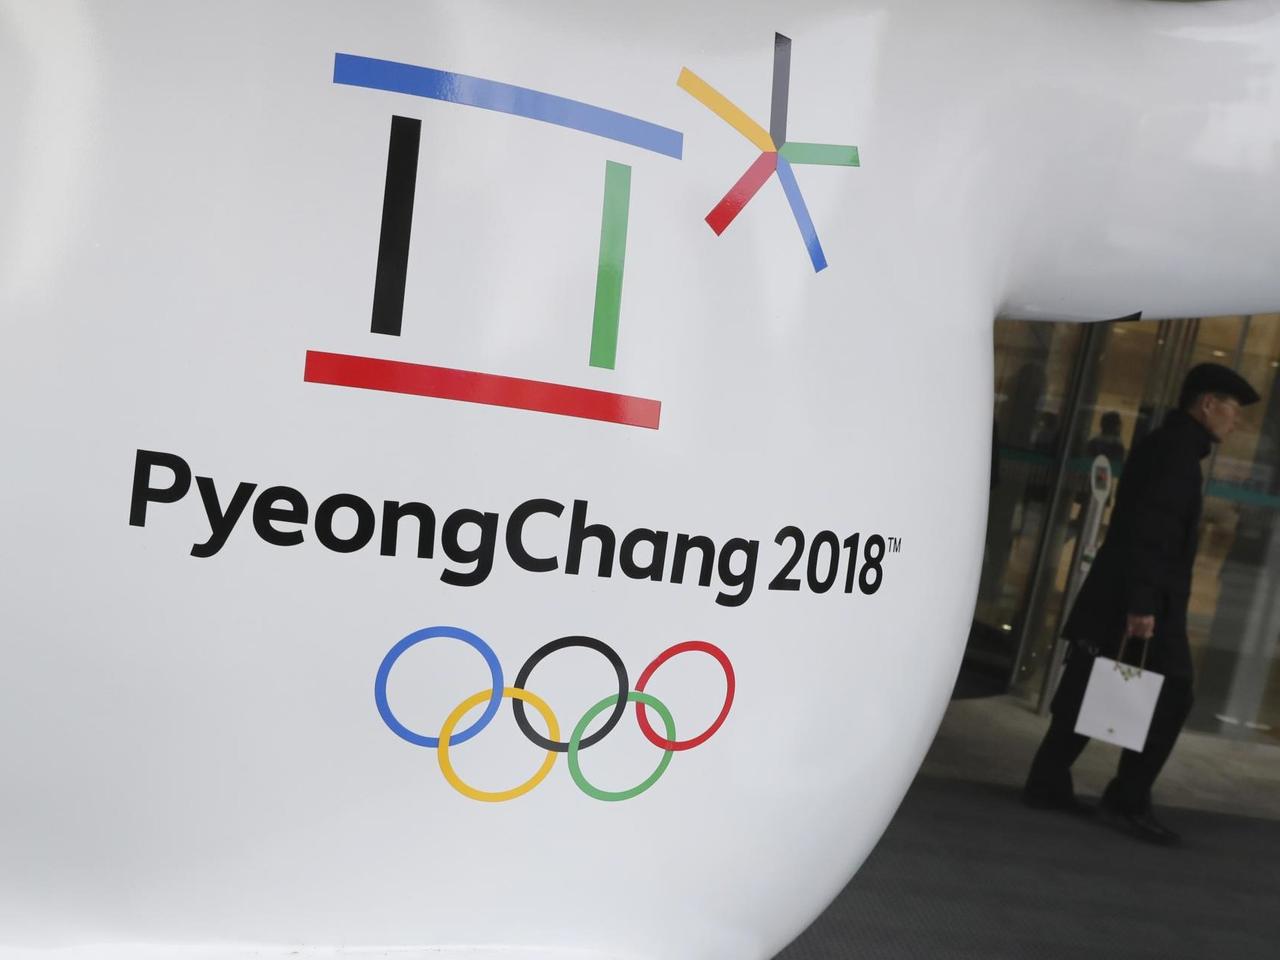 Das offizielle Logo der Olympischen Winterspiele 2018 in Pyeongchang, aufgenommen in Seoul (Südkorea)
Lee Jin-Man